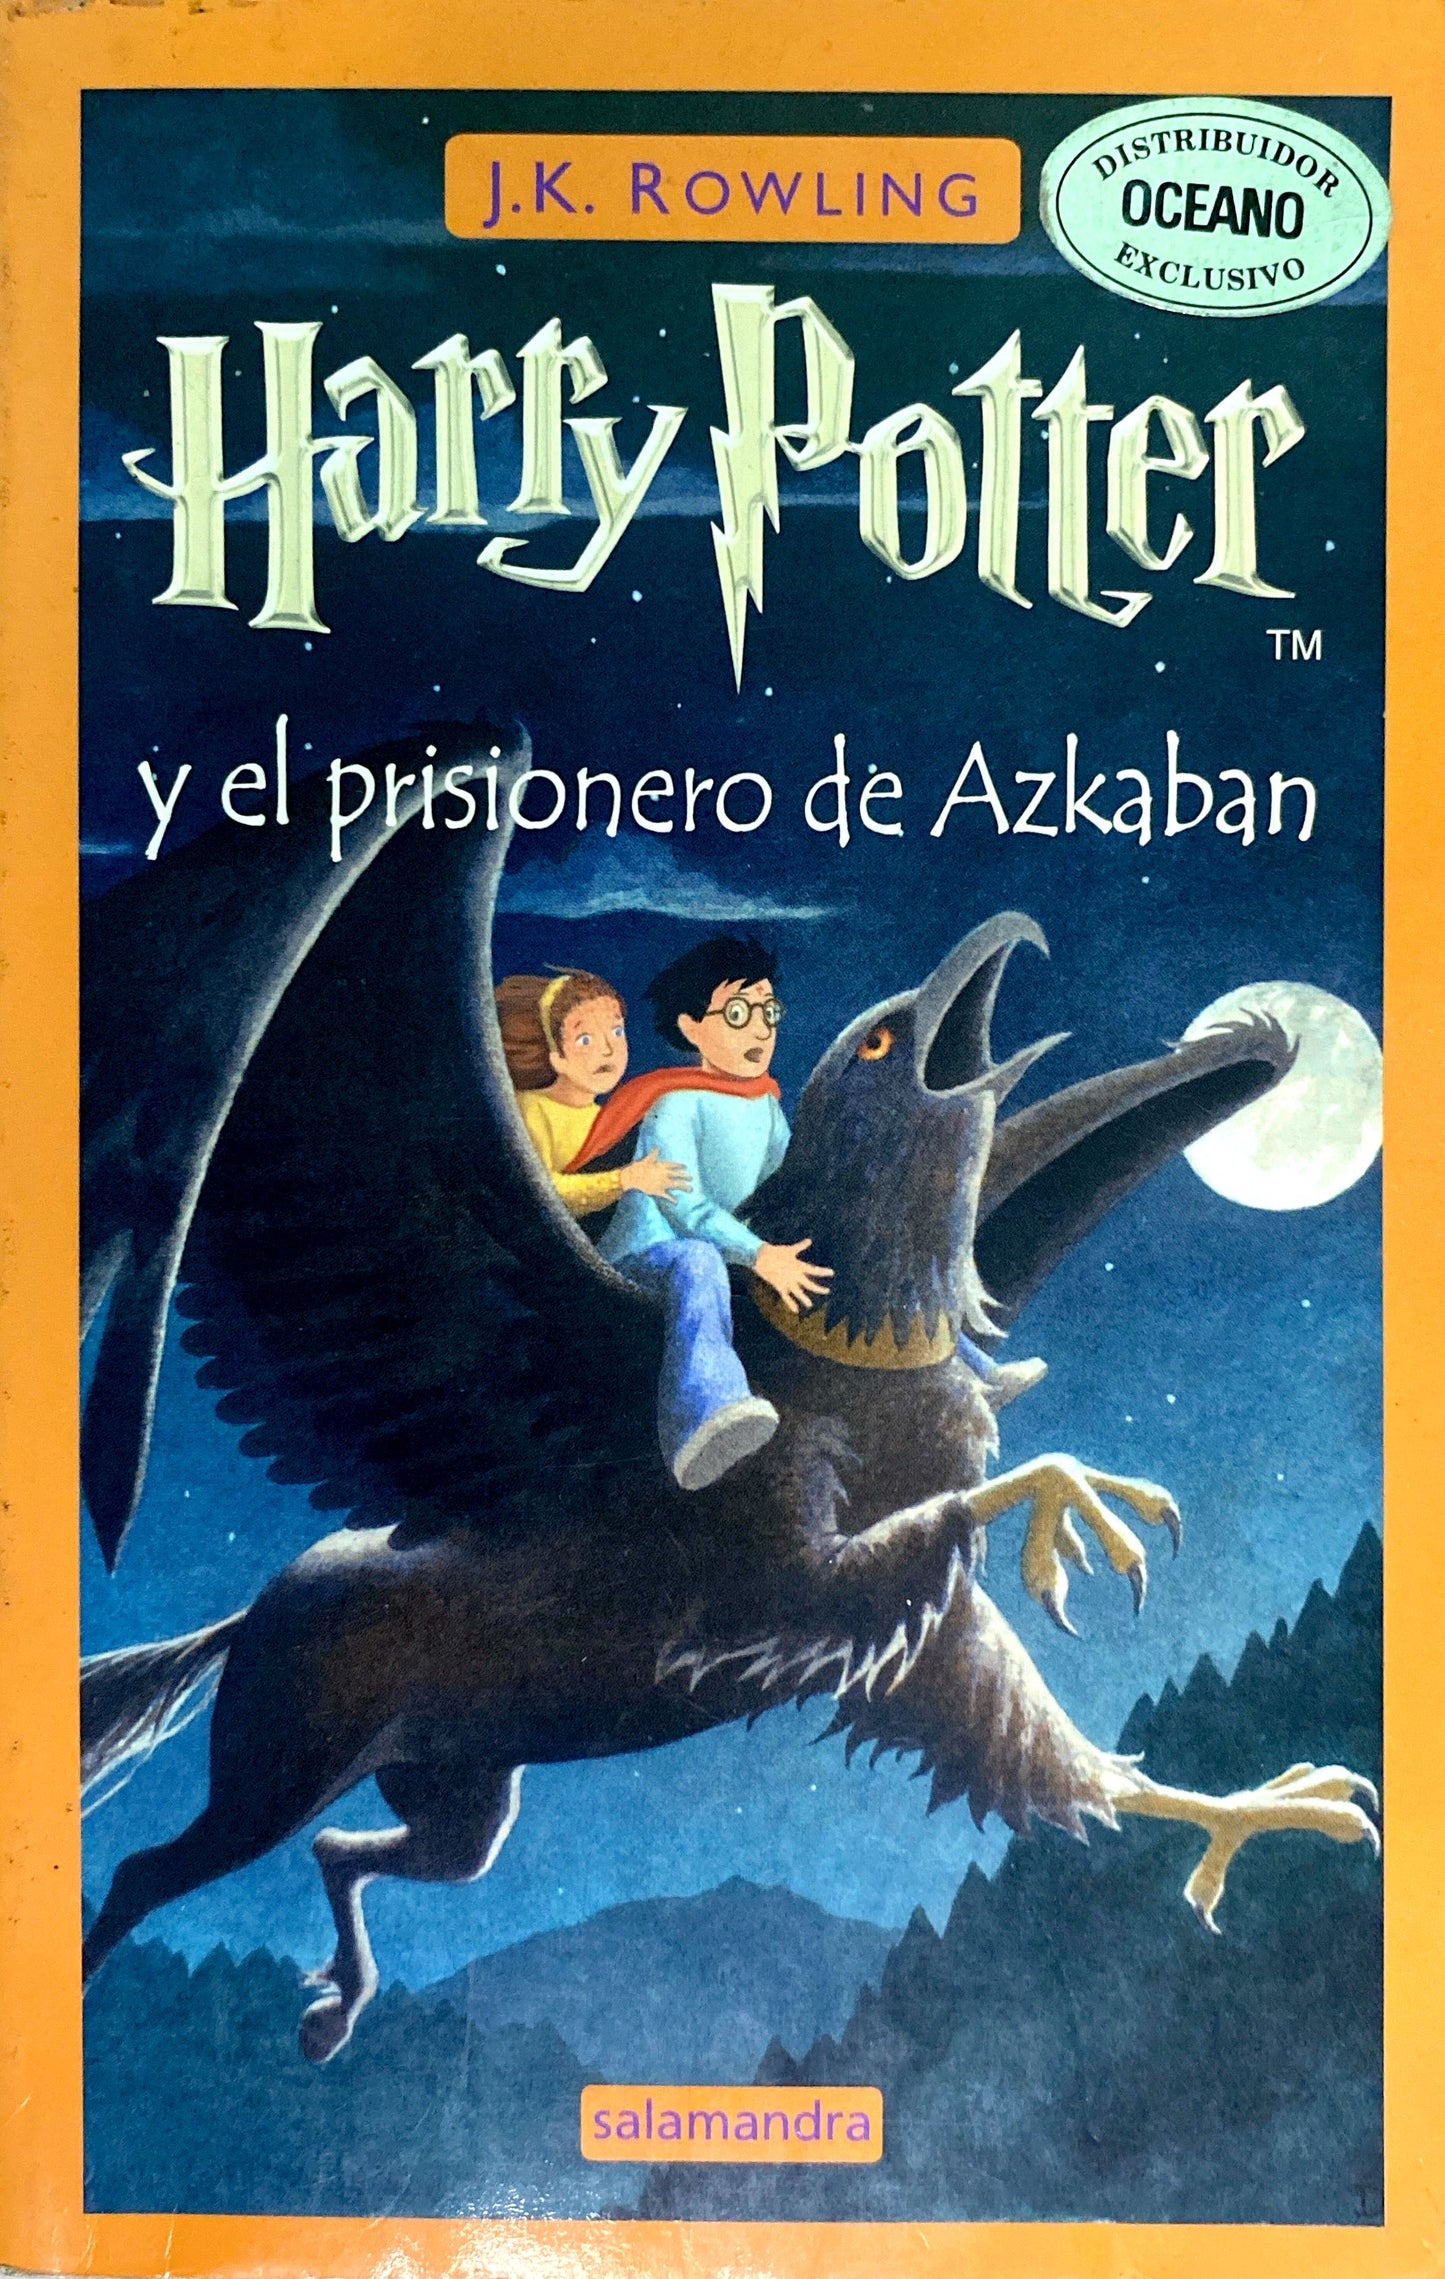 Harry potter y el prisionero de azkaban | J.K.Rowling